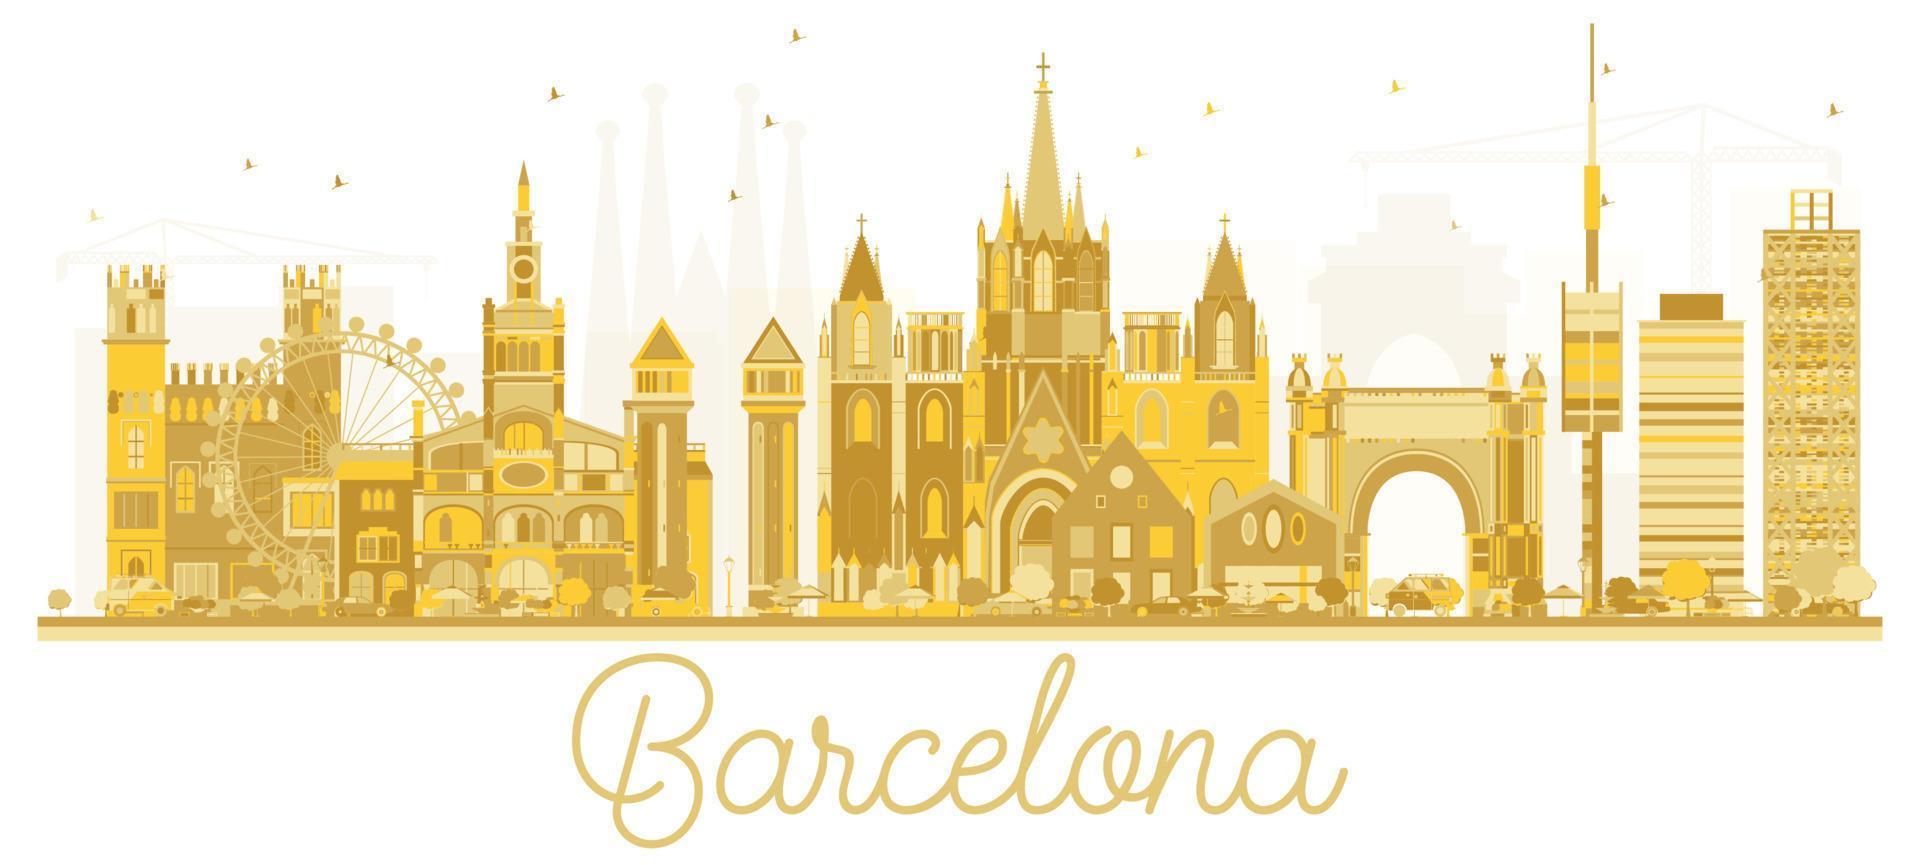 Barcelona Spain City skyline golden silhouette. vector